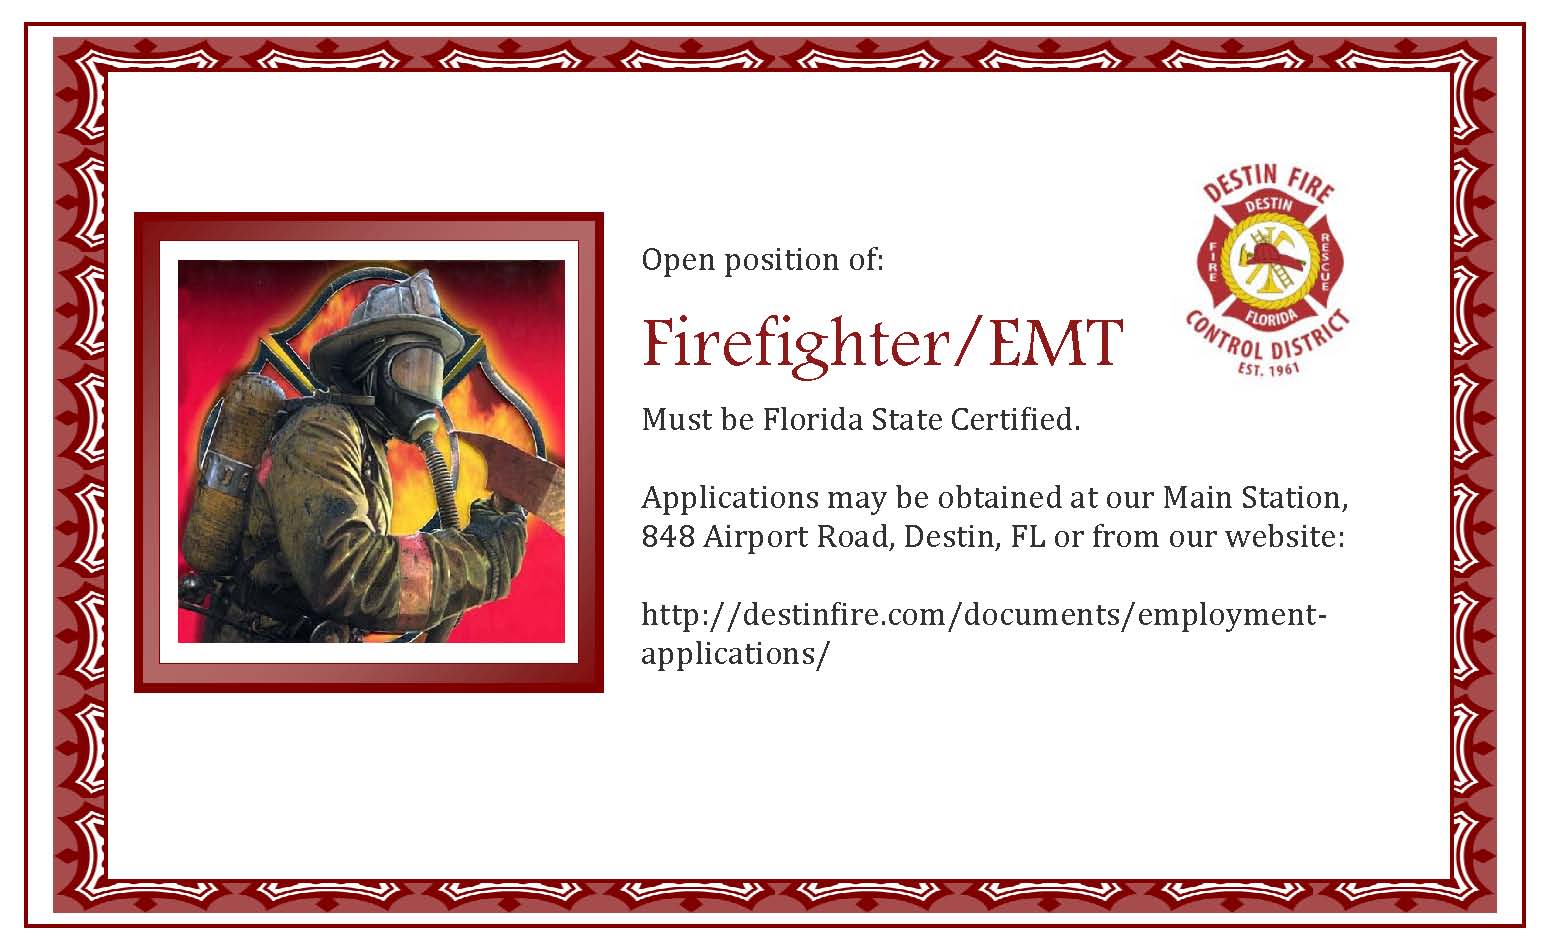 Desitn Fire Control Hiring FF/EMT